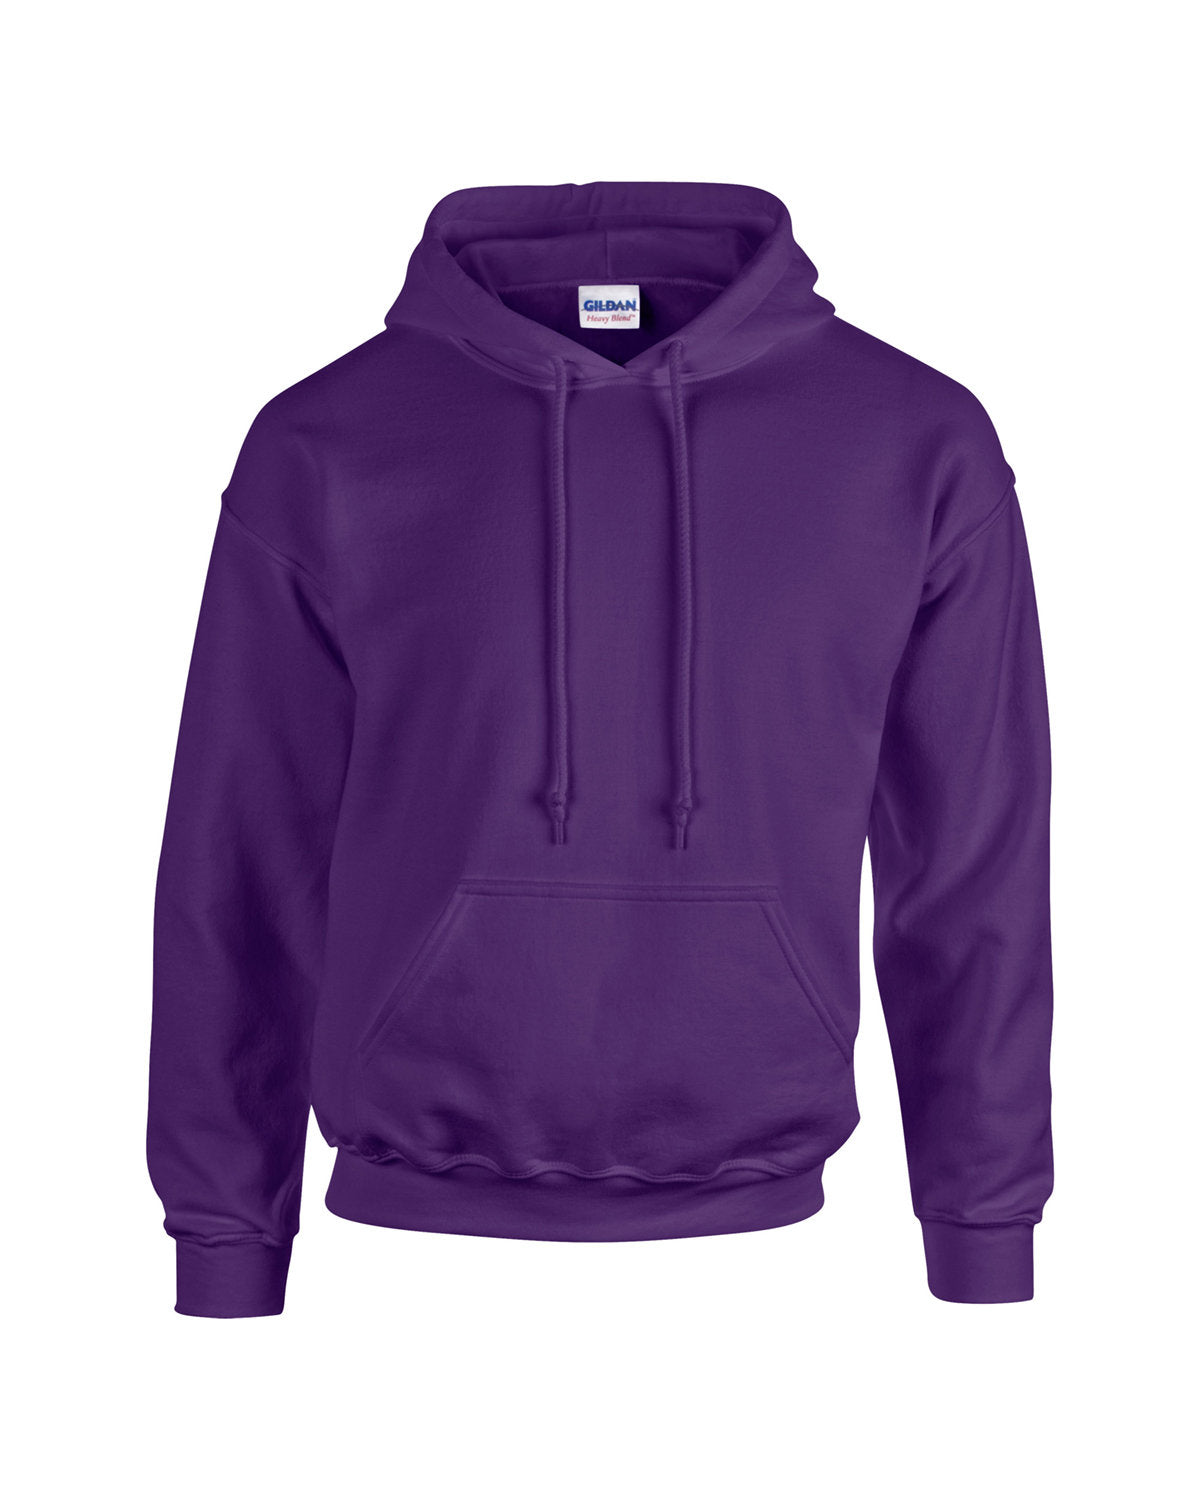 Purple- Gildan 18500 Heavy Blend Hooded Sweatshirt